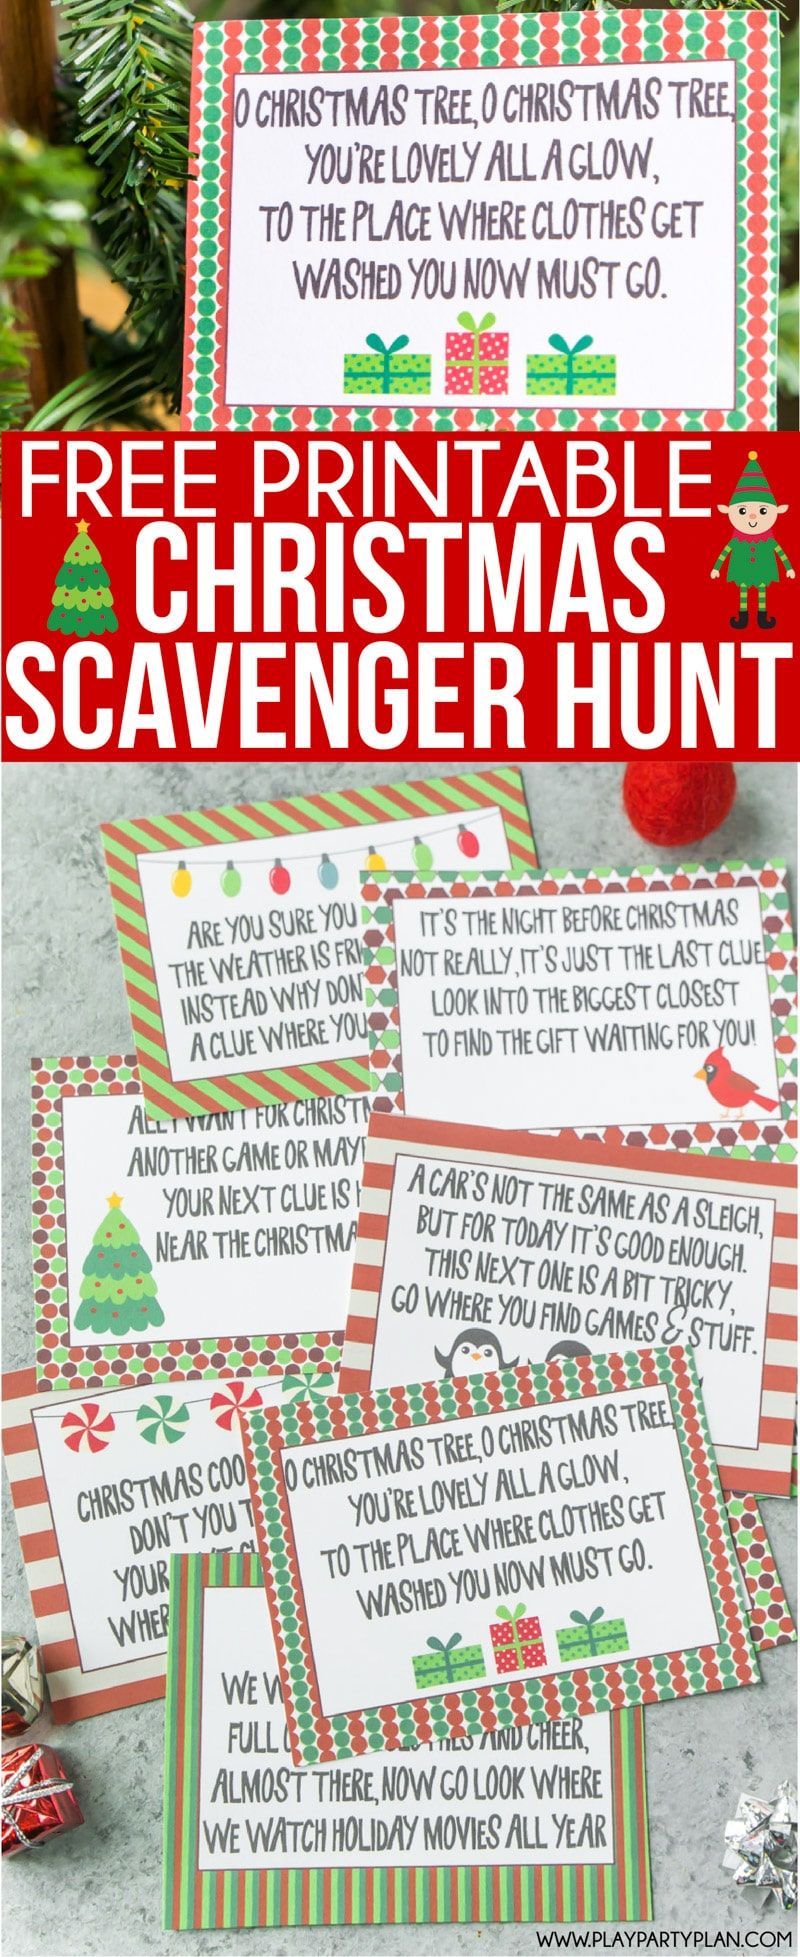 Indicii de vânătoare de Crăciun care pot fi imprimați gratuit pentru copii sau pentru adolescenți! O modalitate distractivă de a-i face pe copii să caute cadouri în dimineața de Crăciun! Pur și simplu imprimați ghicitorile și mergeți! Și bonus - câteva idei distractive de vânătoare de Crăciun și pentru adulți!